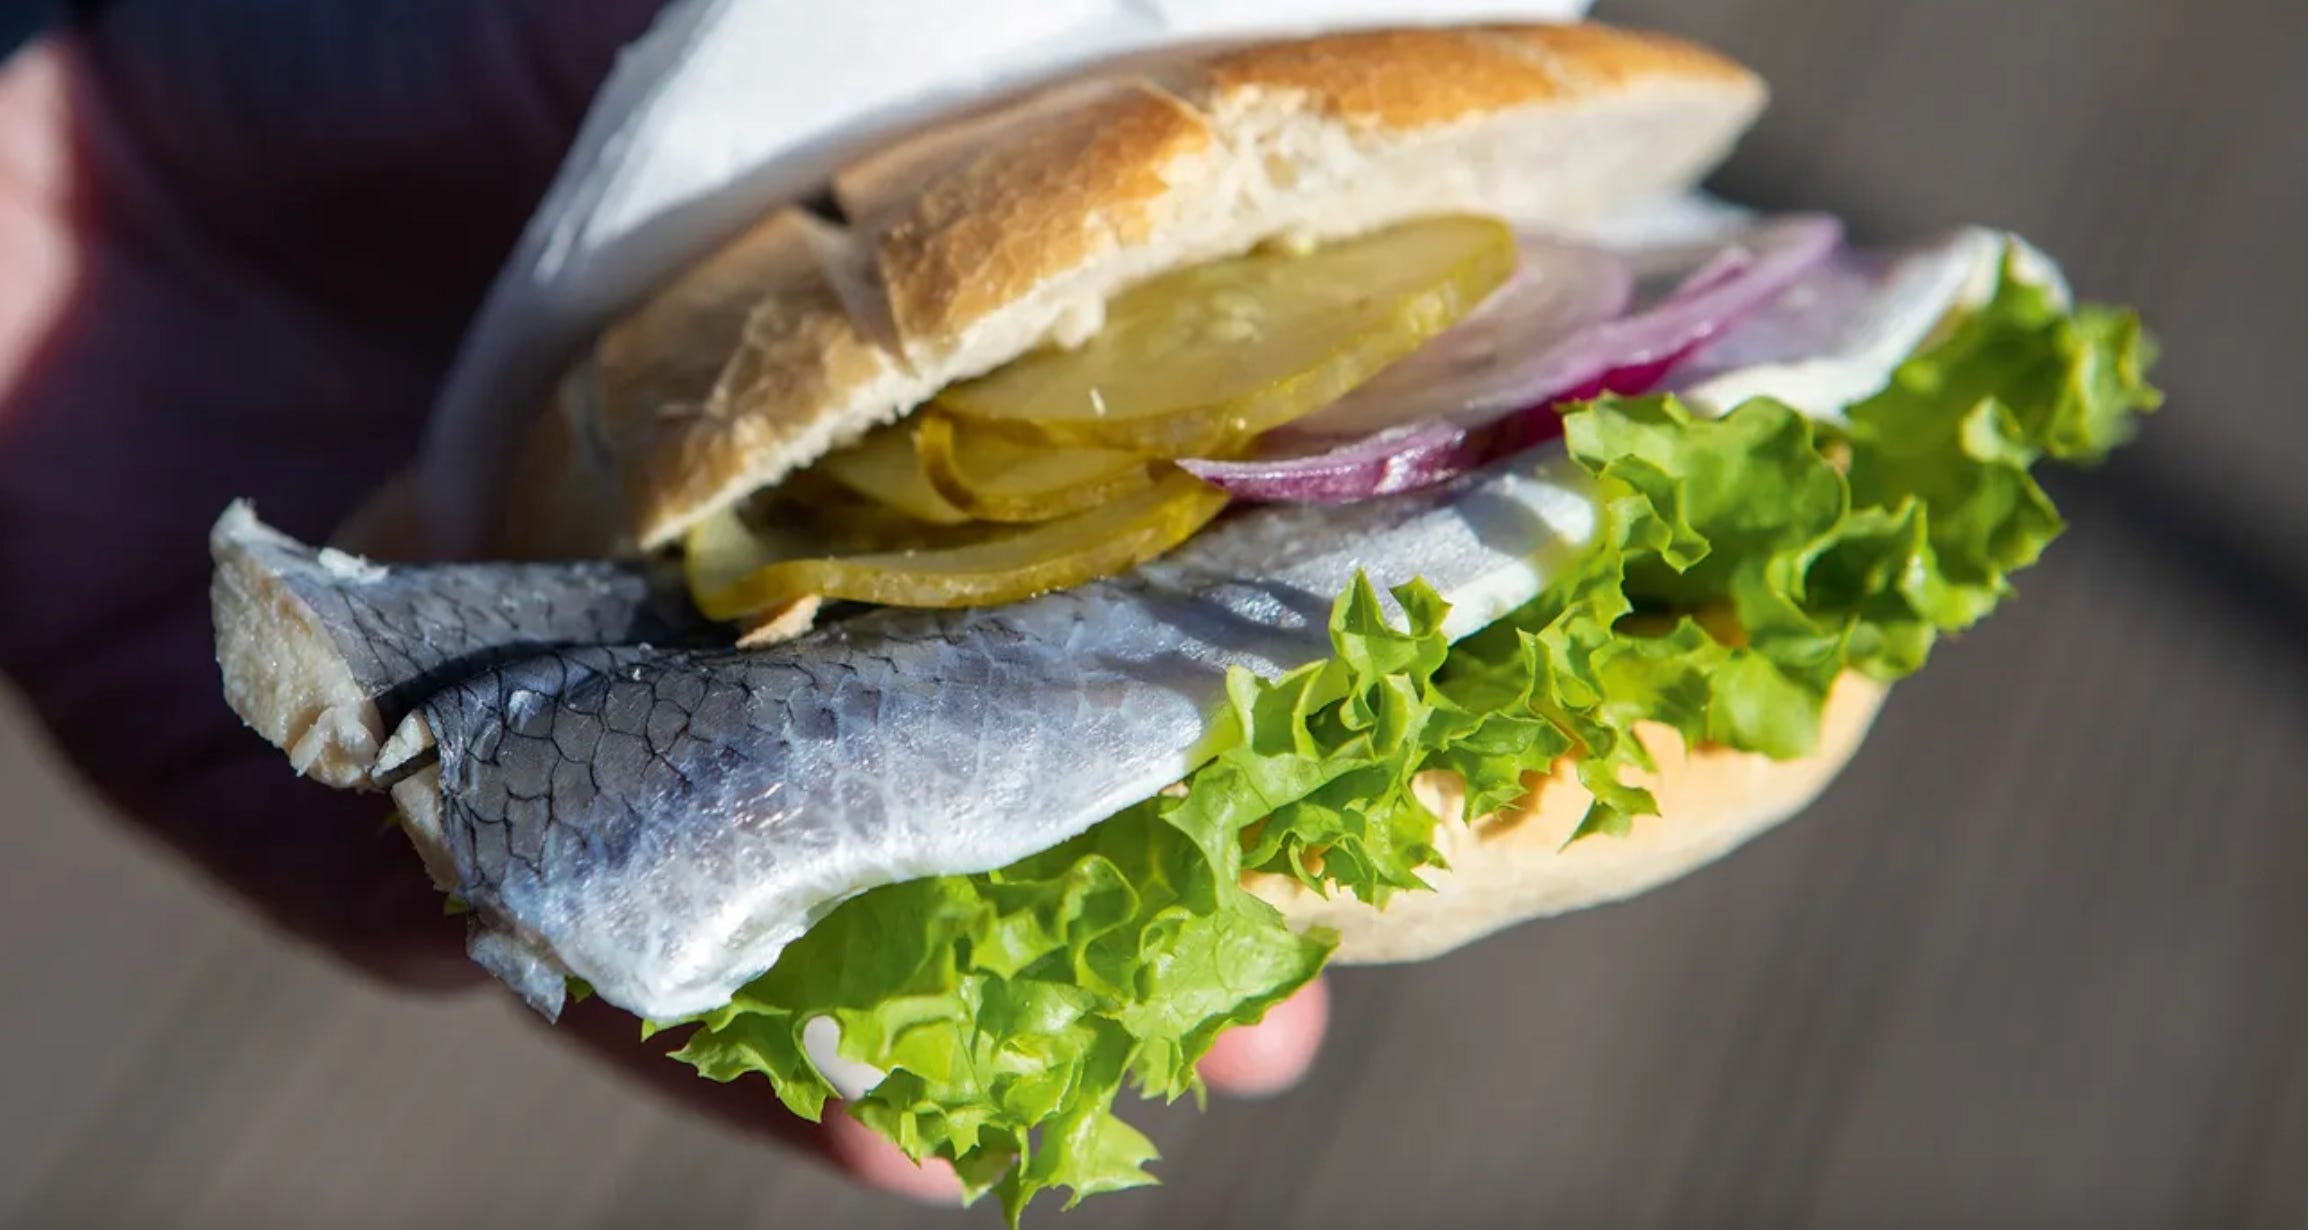 Pickled herring - Wikipedia